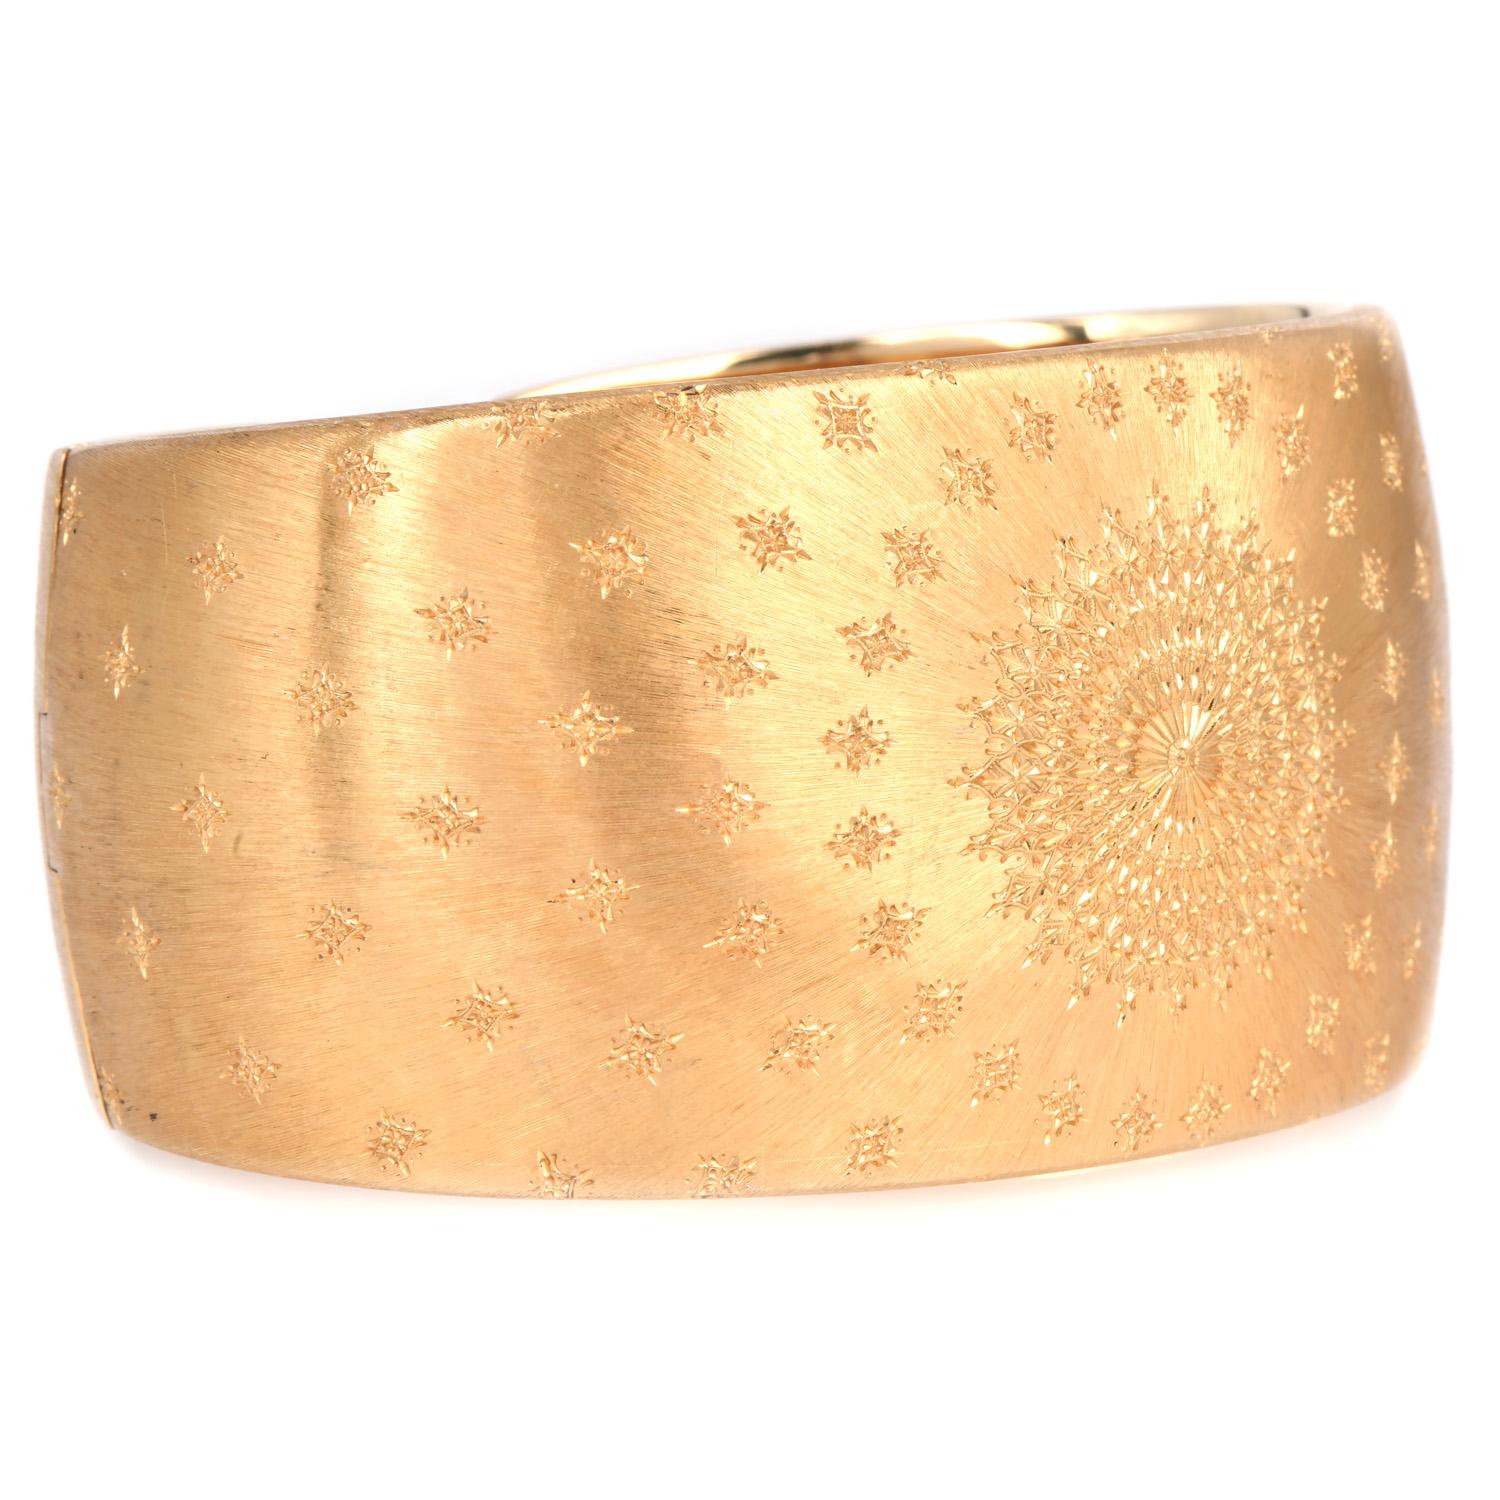 Nous vous présentons un magnifique bracelet manchette Buccellati en or jaune massif 18 carats.

Un bracelet manchette exquis, témoin d'une élégance intemporelle. Réalisée en or jaune 18 carats massif avec une finition satinée, cette manchette à